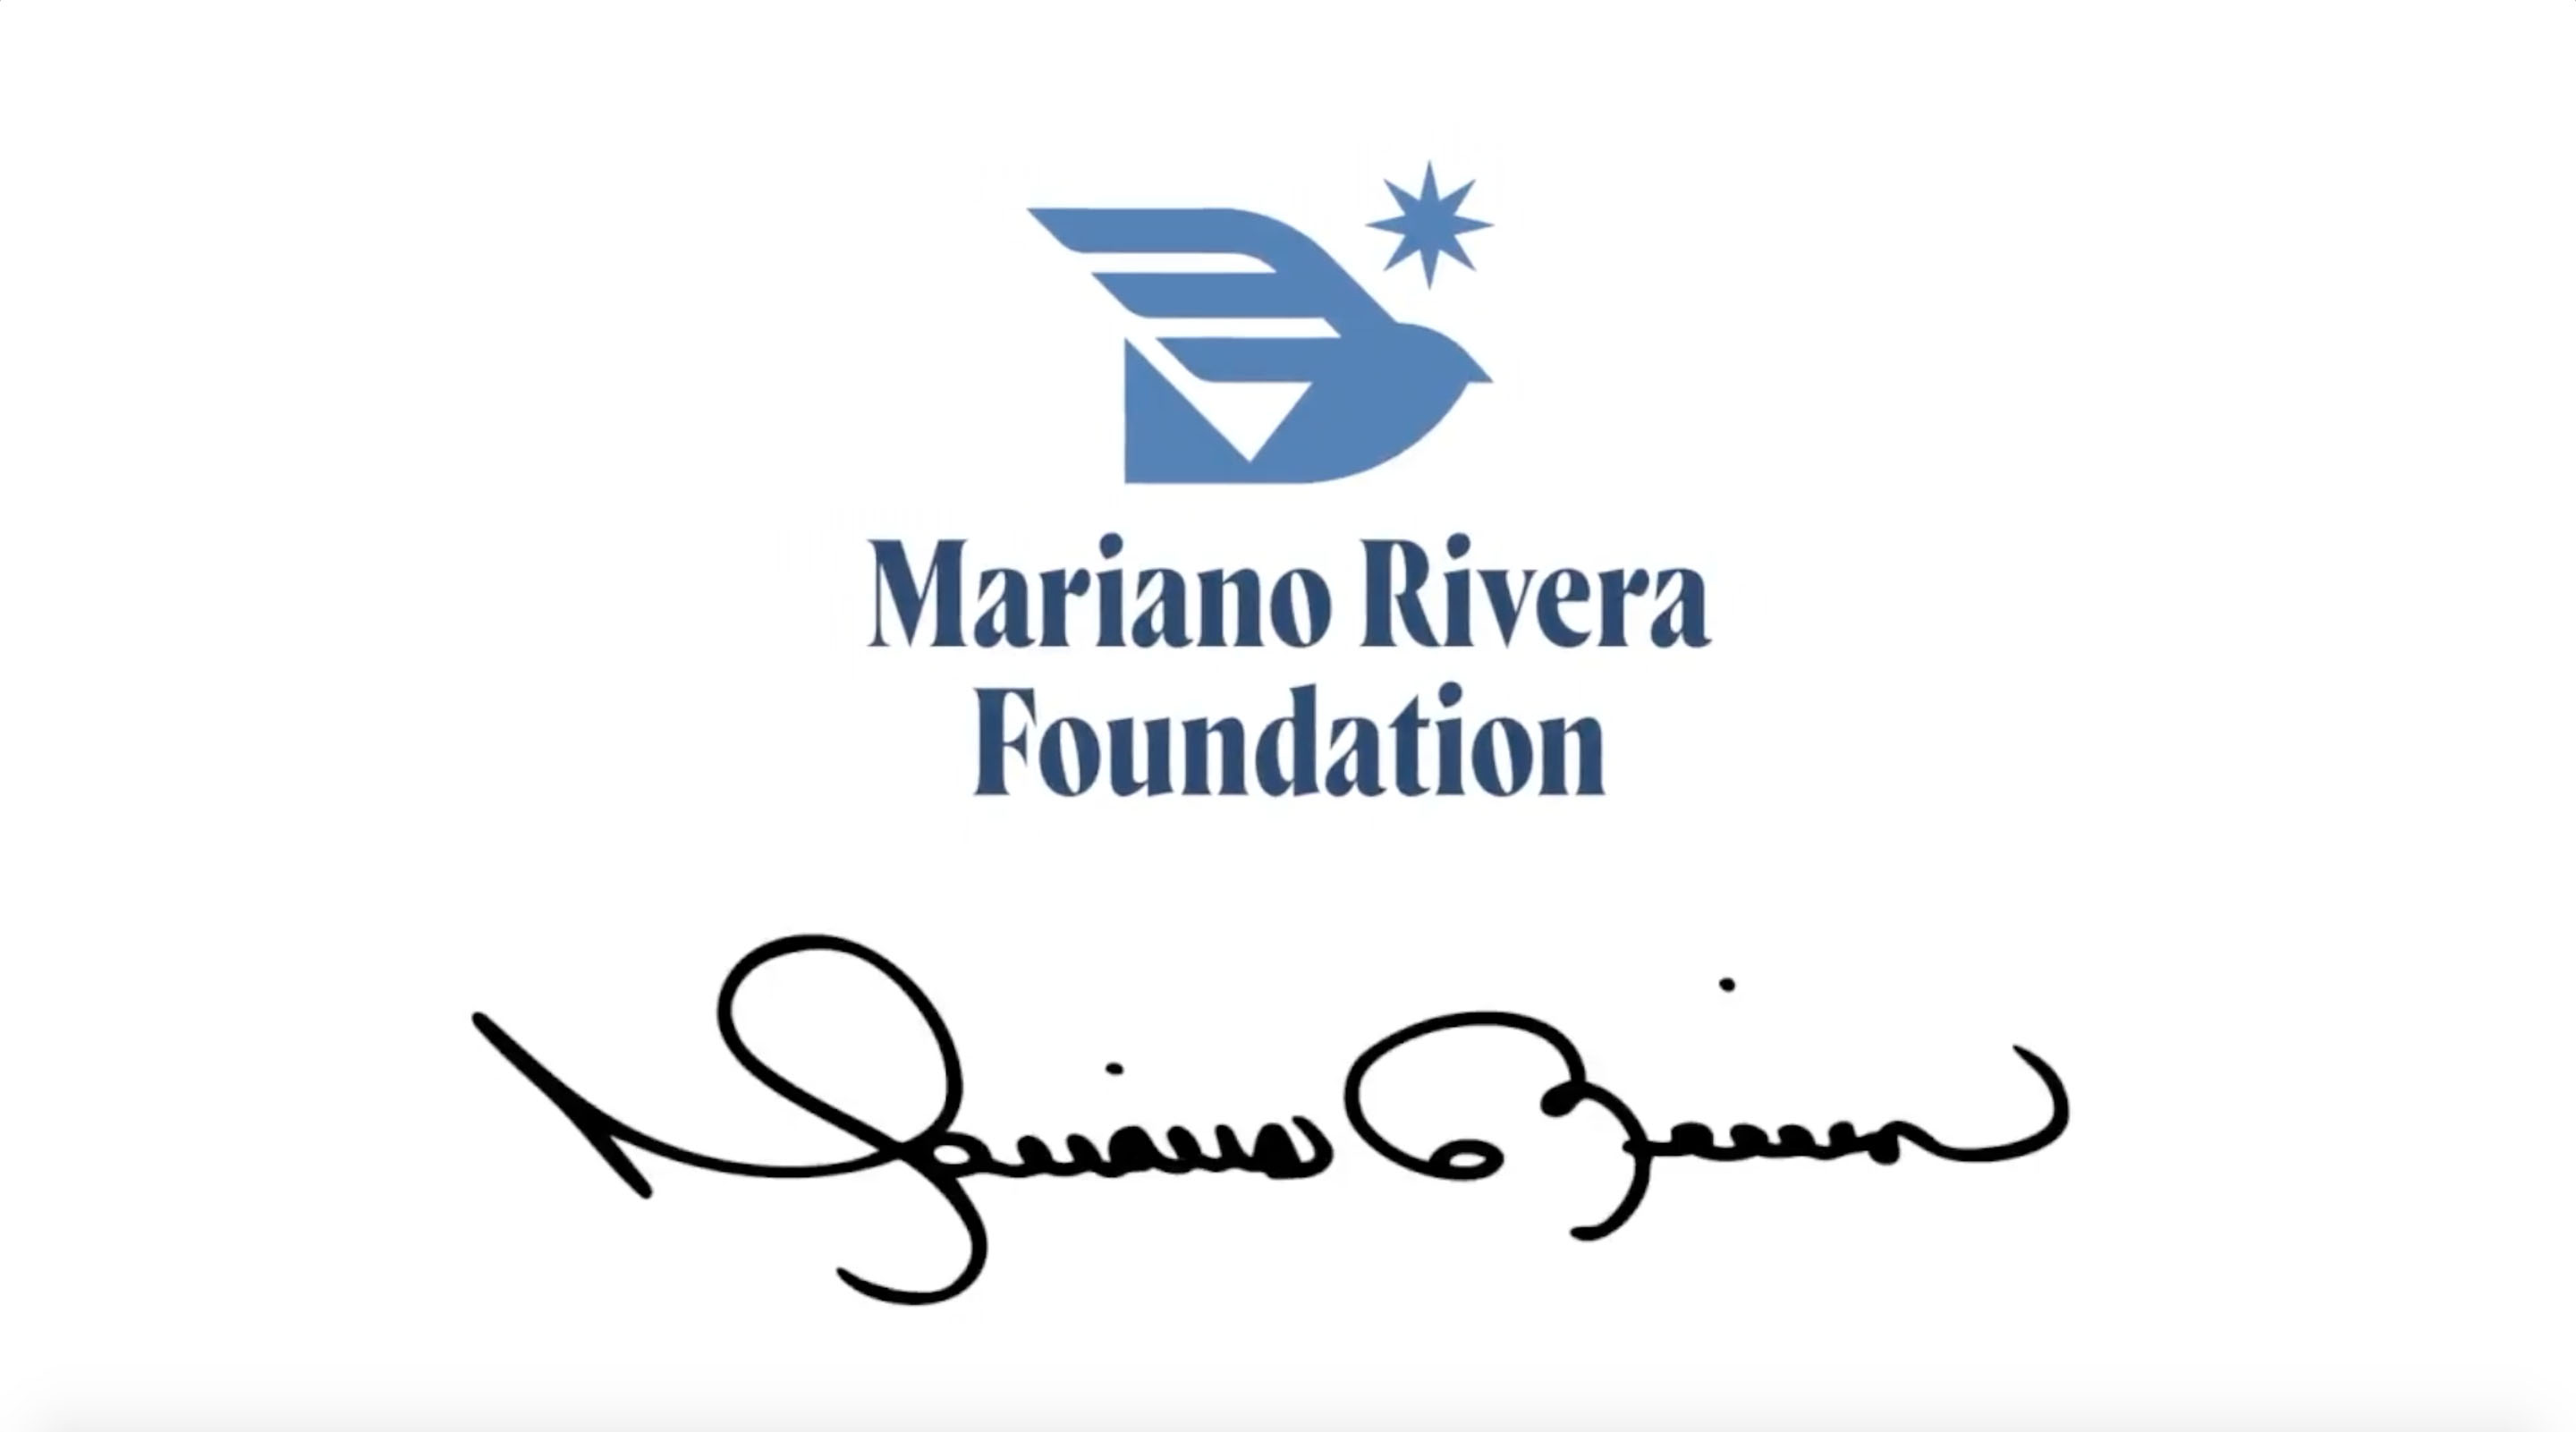 The Mariano Rivera Foundation